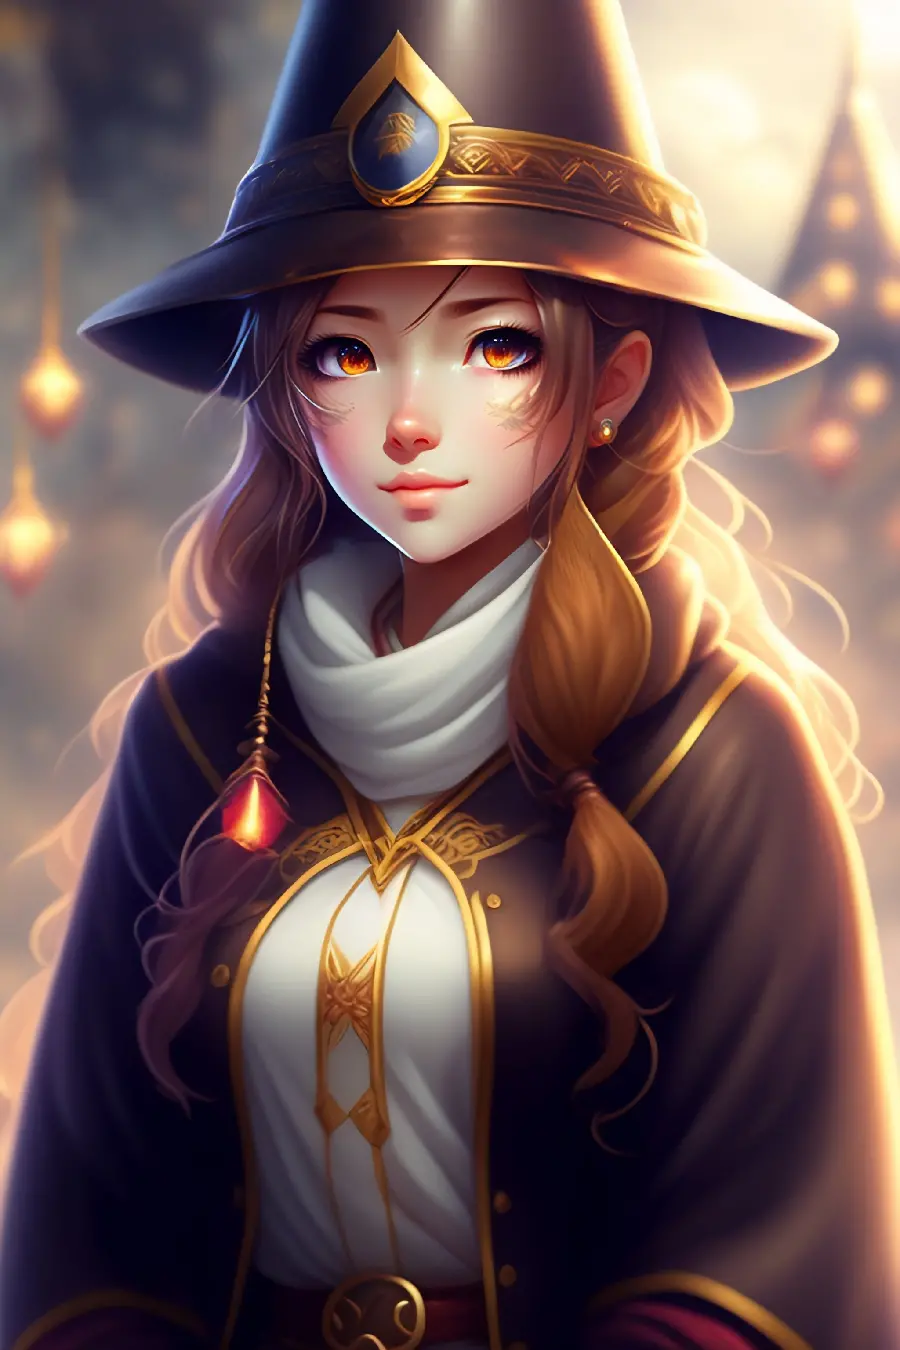 عکس جادوگر دختر کیوت و زیبا با کلاه و شنل جذاب